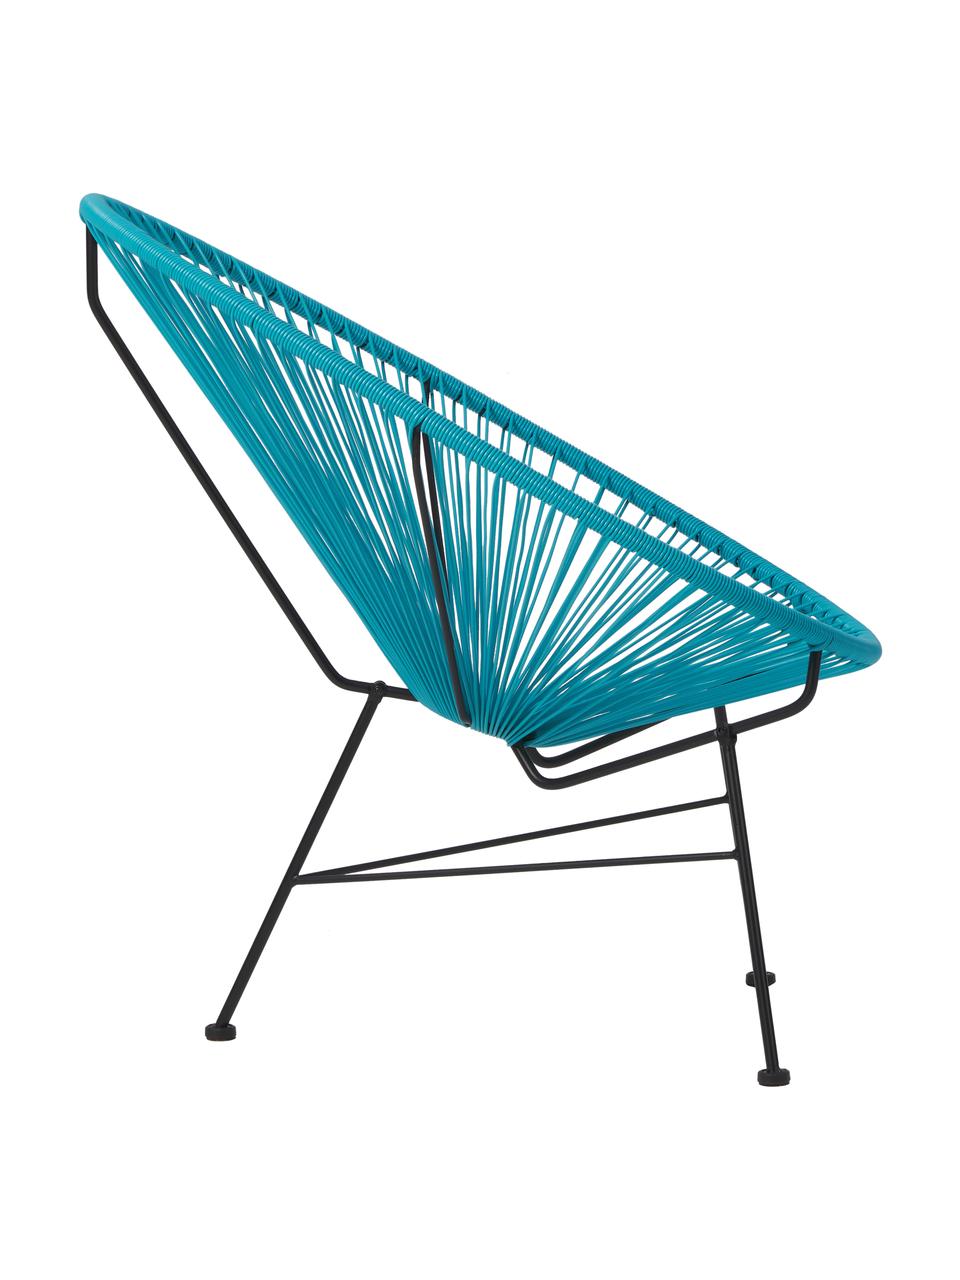 Fotel wypoczynkowy ze splotu z tworzywa sztucznego Bahia, Stelaż: metal malowany proszkowo, Niebieski, S 81 x G 73 cm